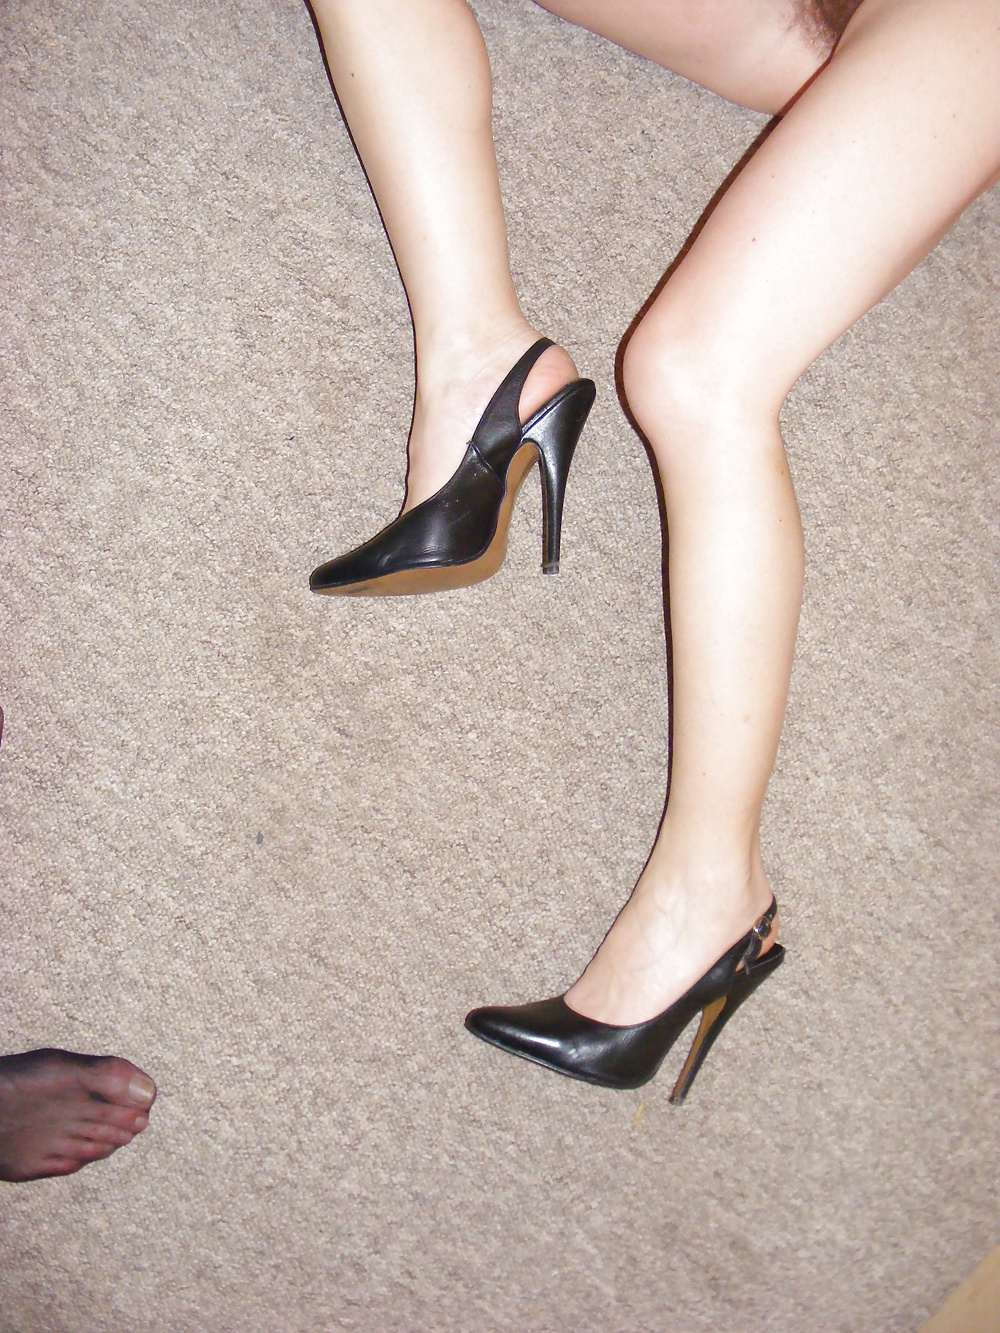 Hot milf wearing heels and panties #27572606